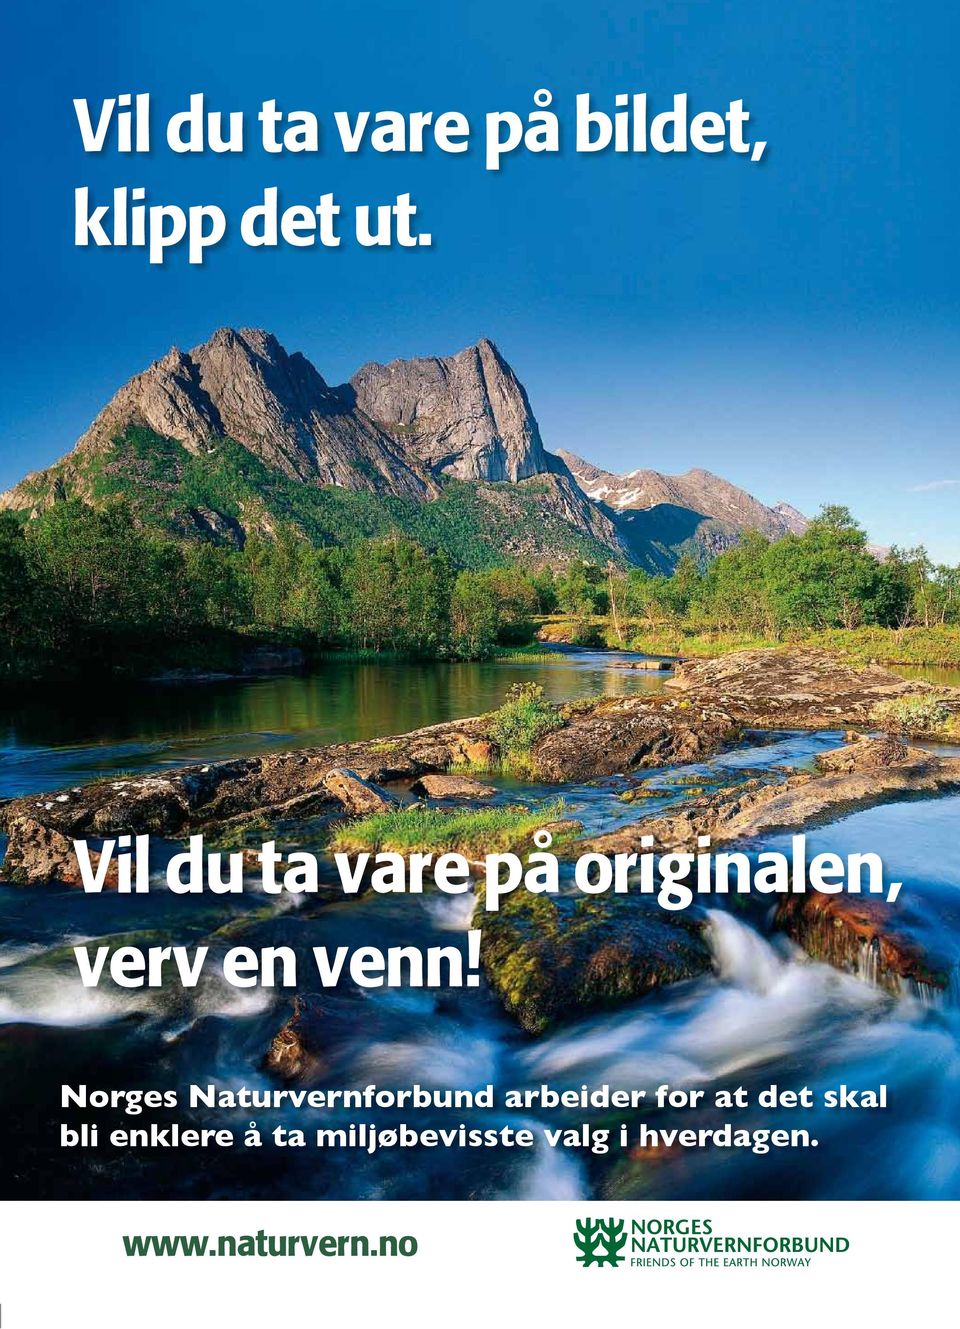 Norges Naturvernforbund arbeider for at det skal